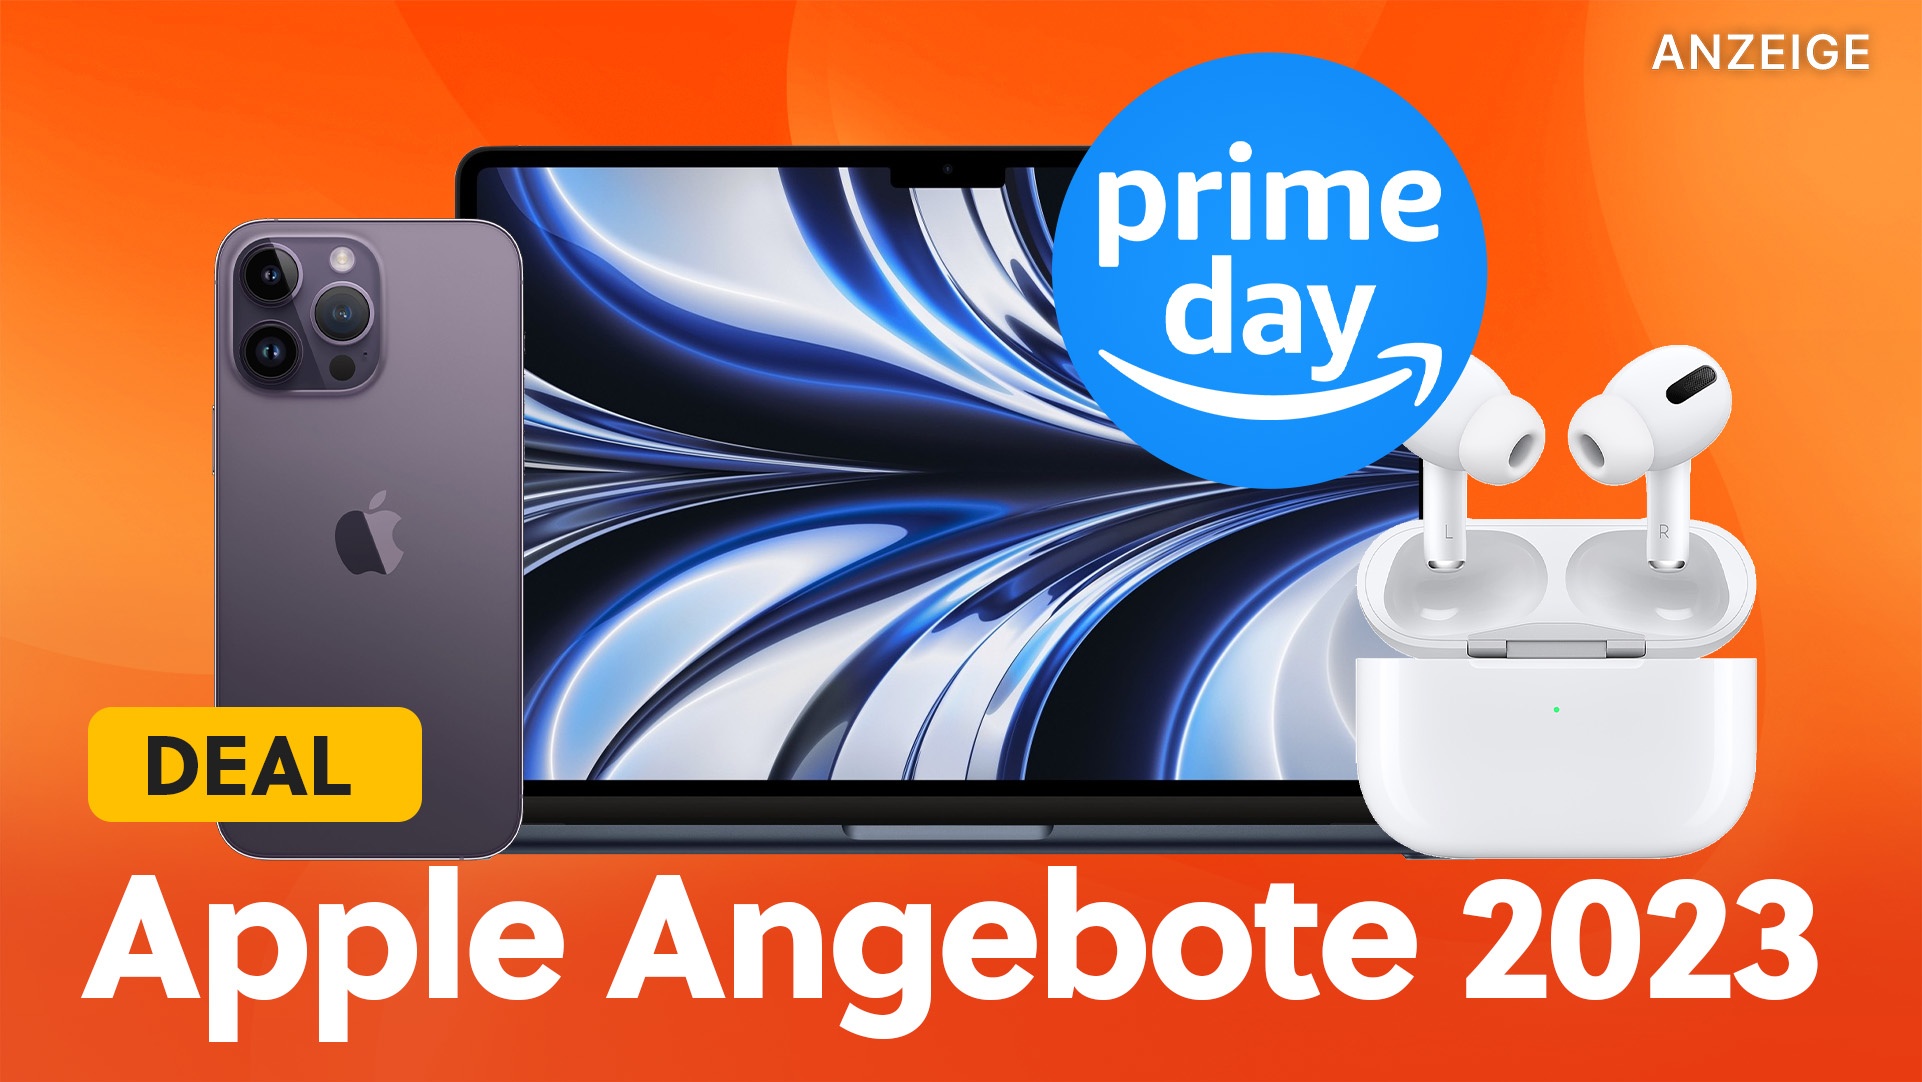 Amazon Prime Day Angebote 2023: Diese Apple Schnäppchen zum iPhone, iPad, MacBook und Co erwarten euch